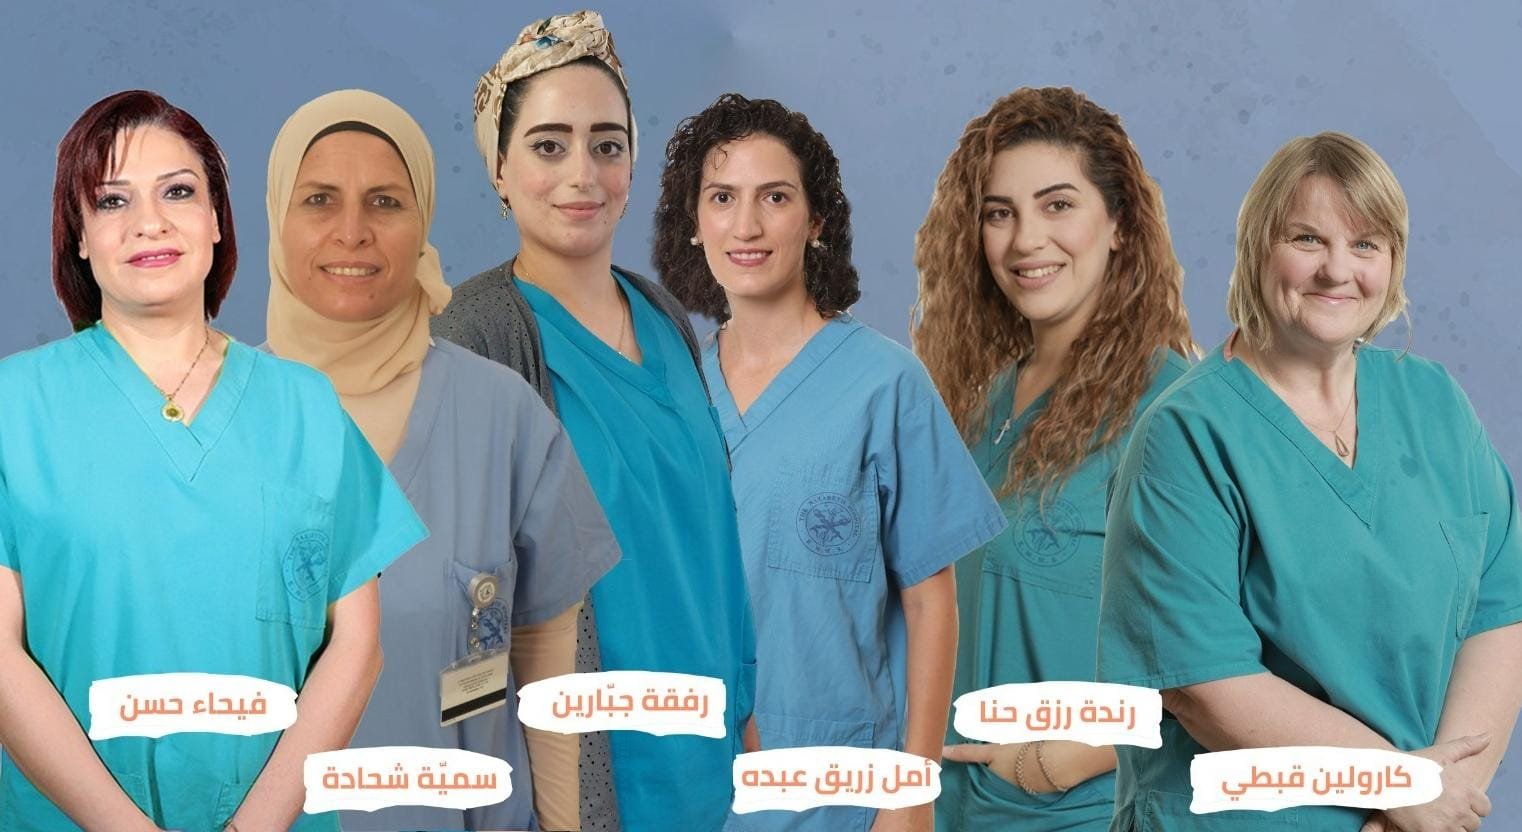 المستشفى الإنجليزي- الناصرة للحمل والولادة وطب النساء يرافق الوالدات والحوامل فترة حملهن